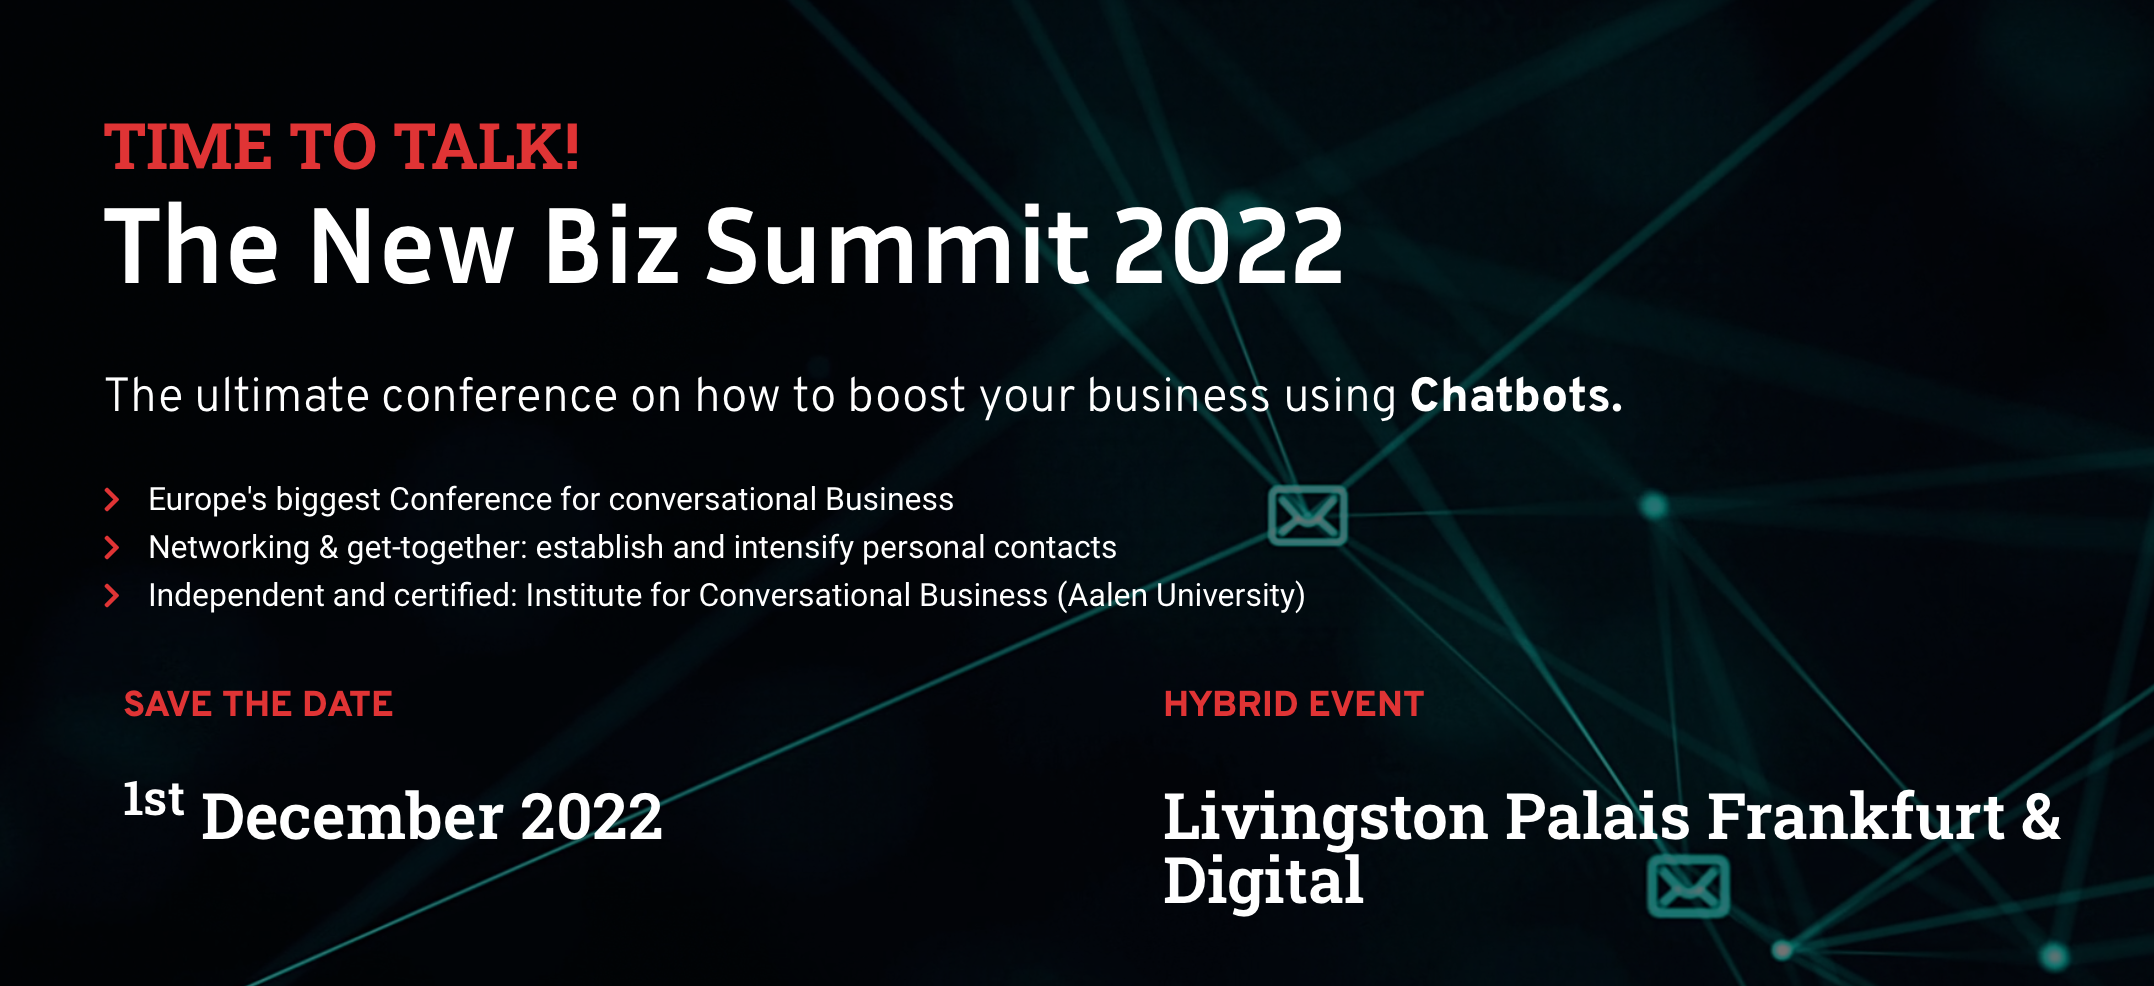 TIME TO TALK! The New Biz Summit 2022